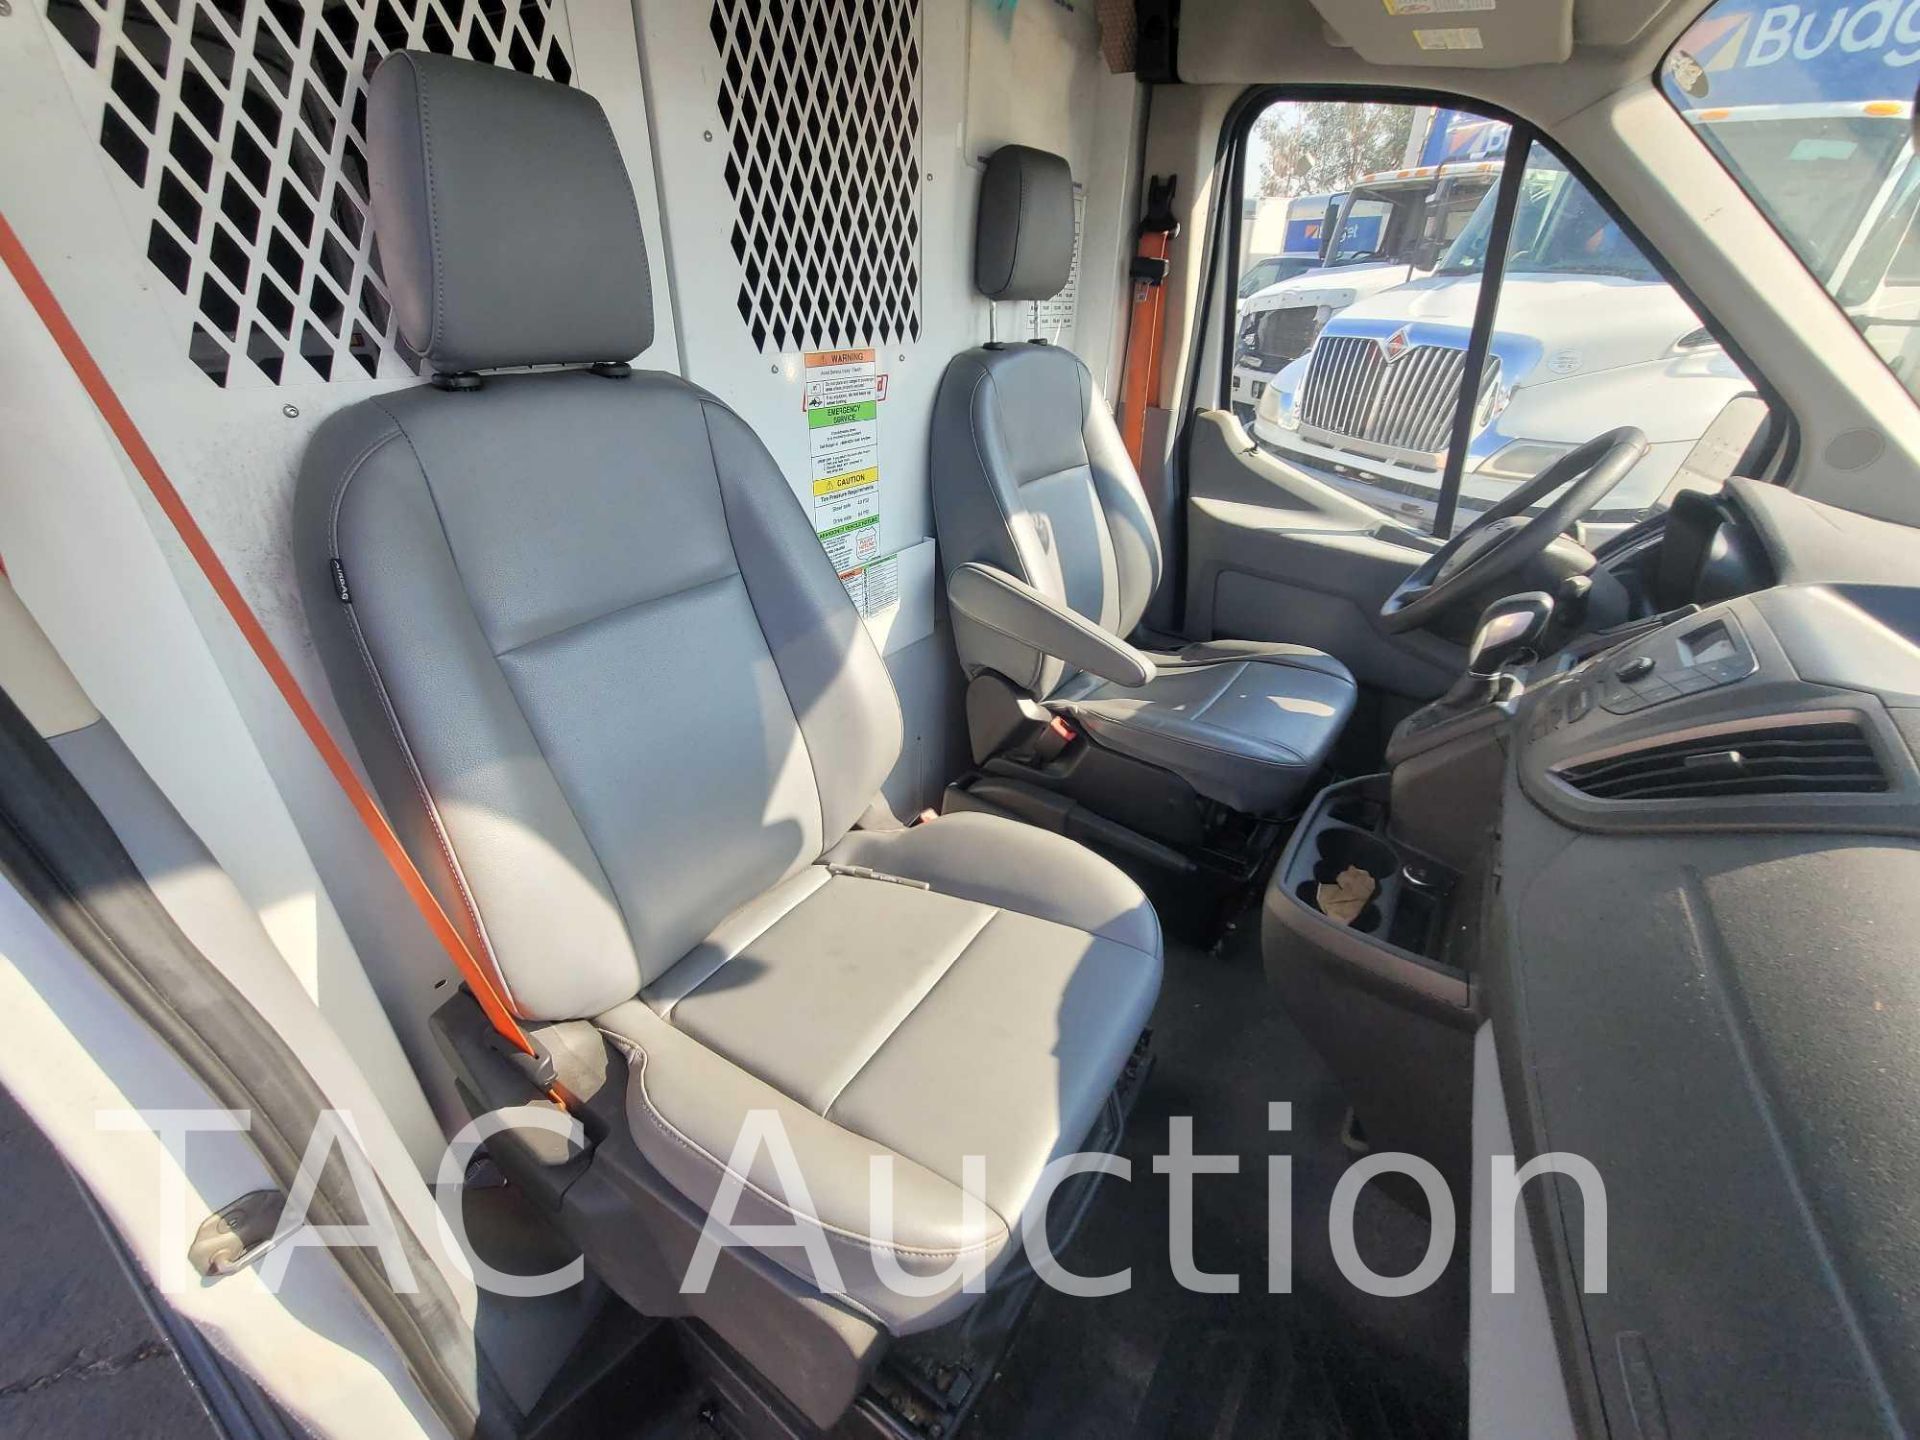 2016 Ford Transit 150 Cargo Van - Image 33 of 53